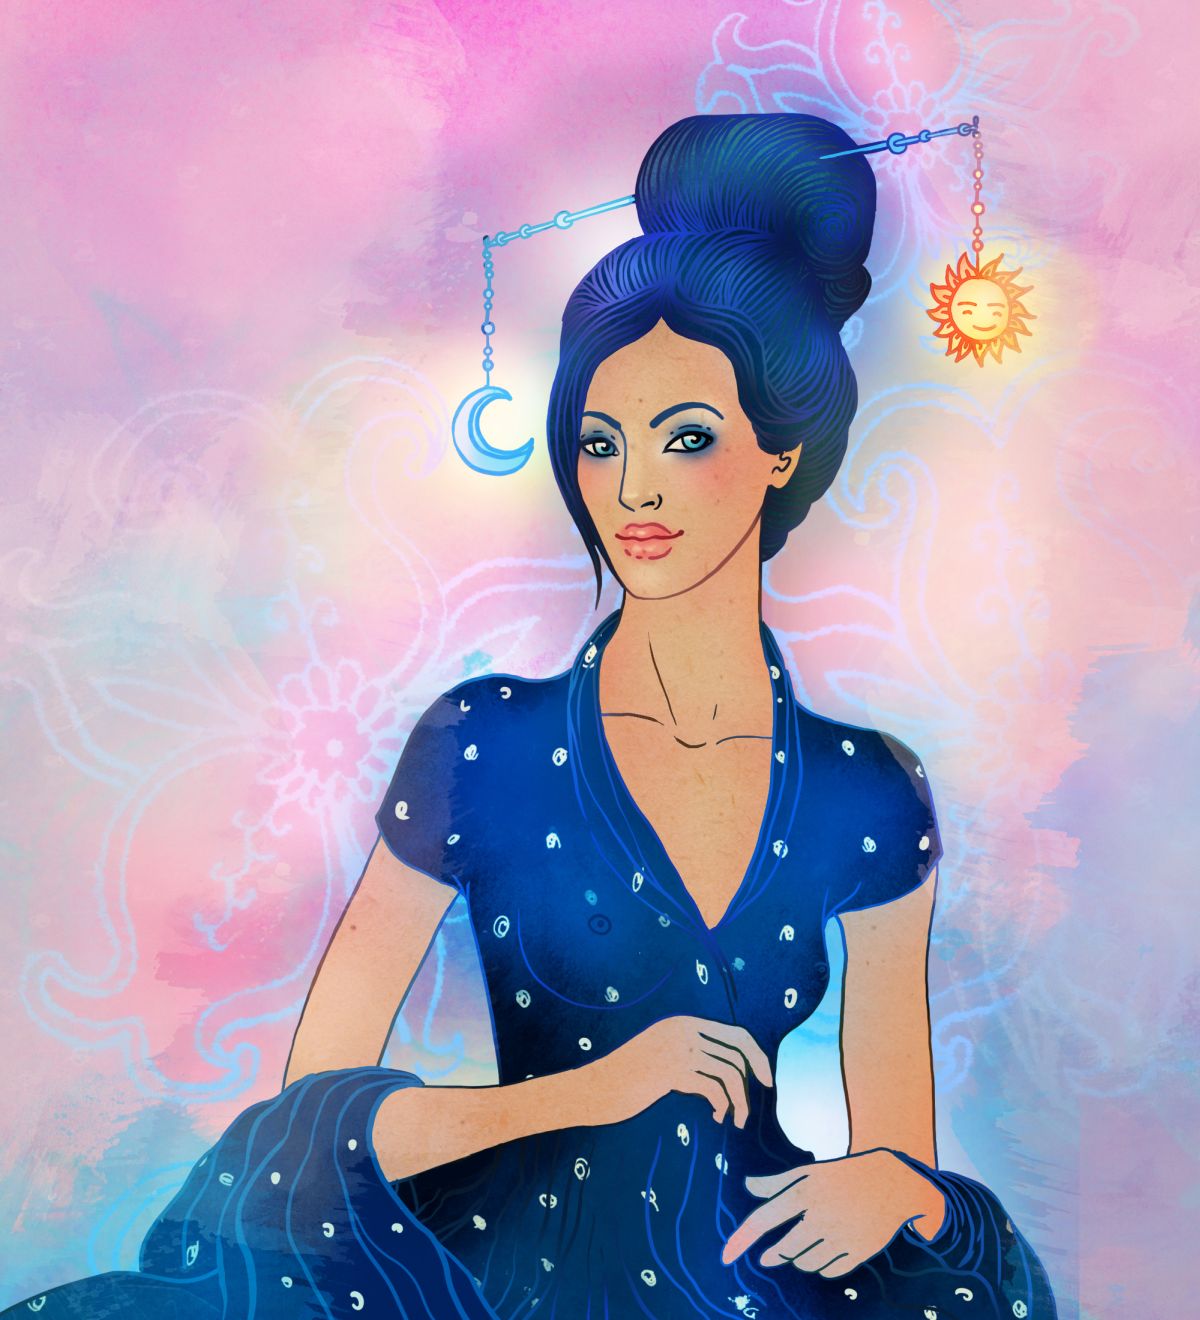 O femeie frumoasă, cu părul și rochia albastre, ilustrează zodia Balanță.